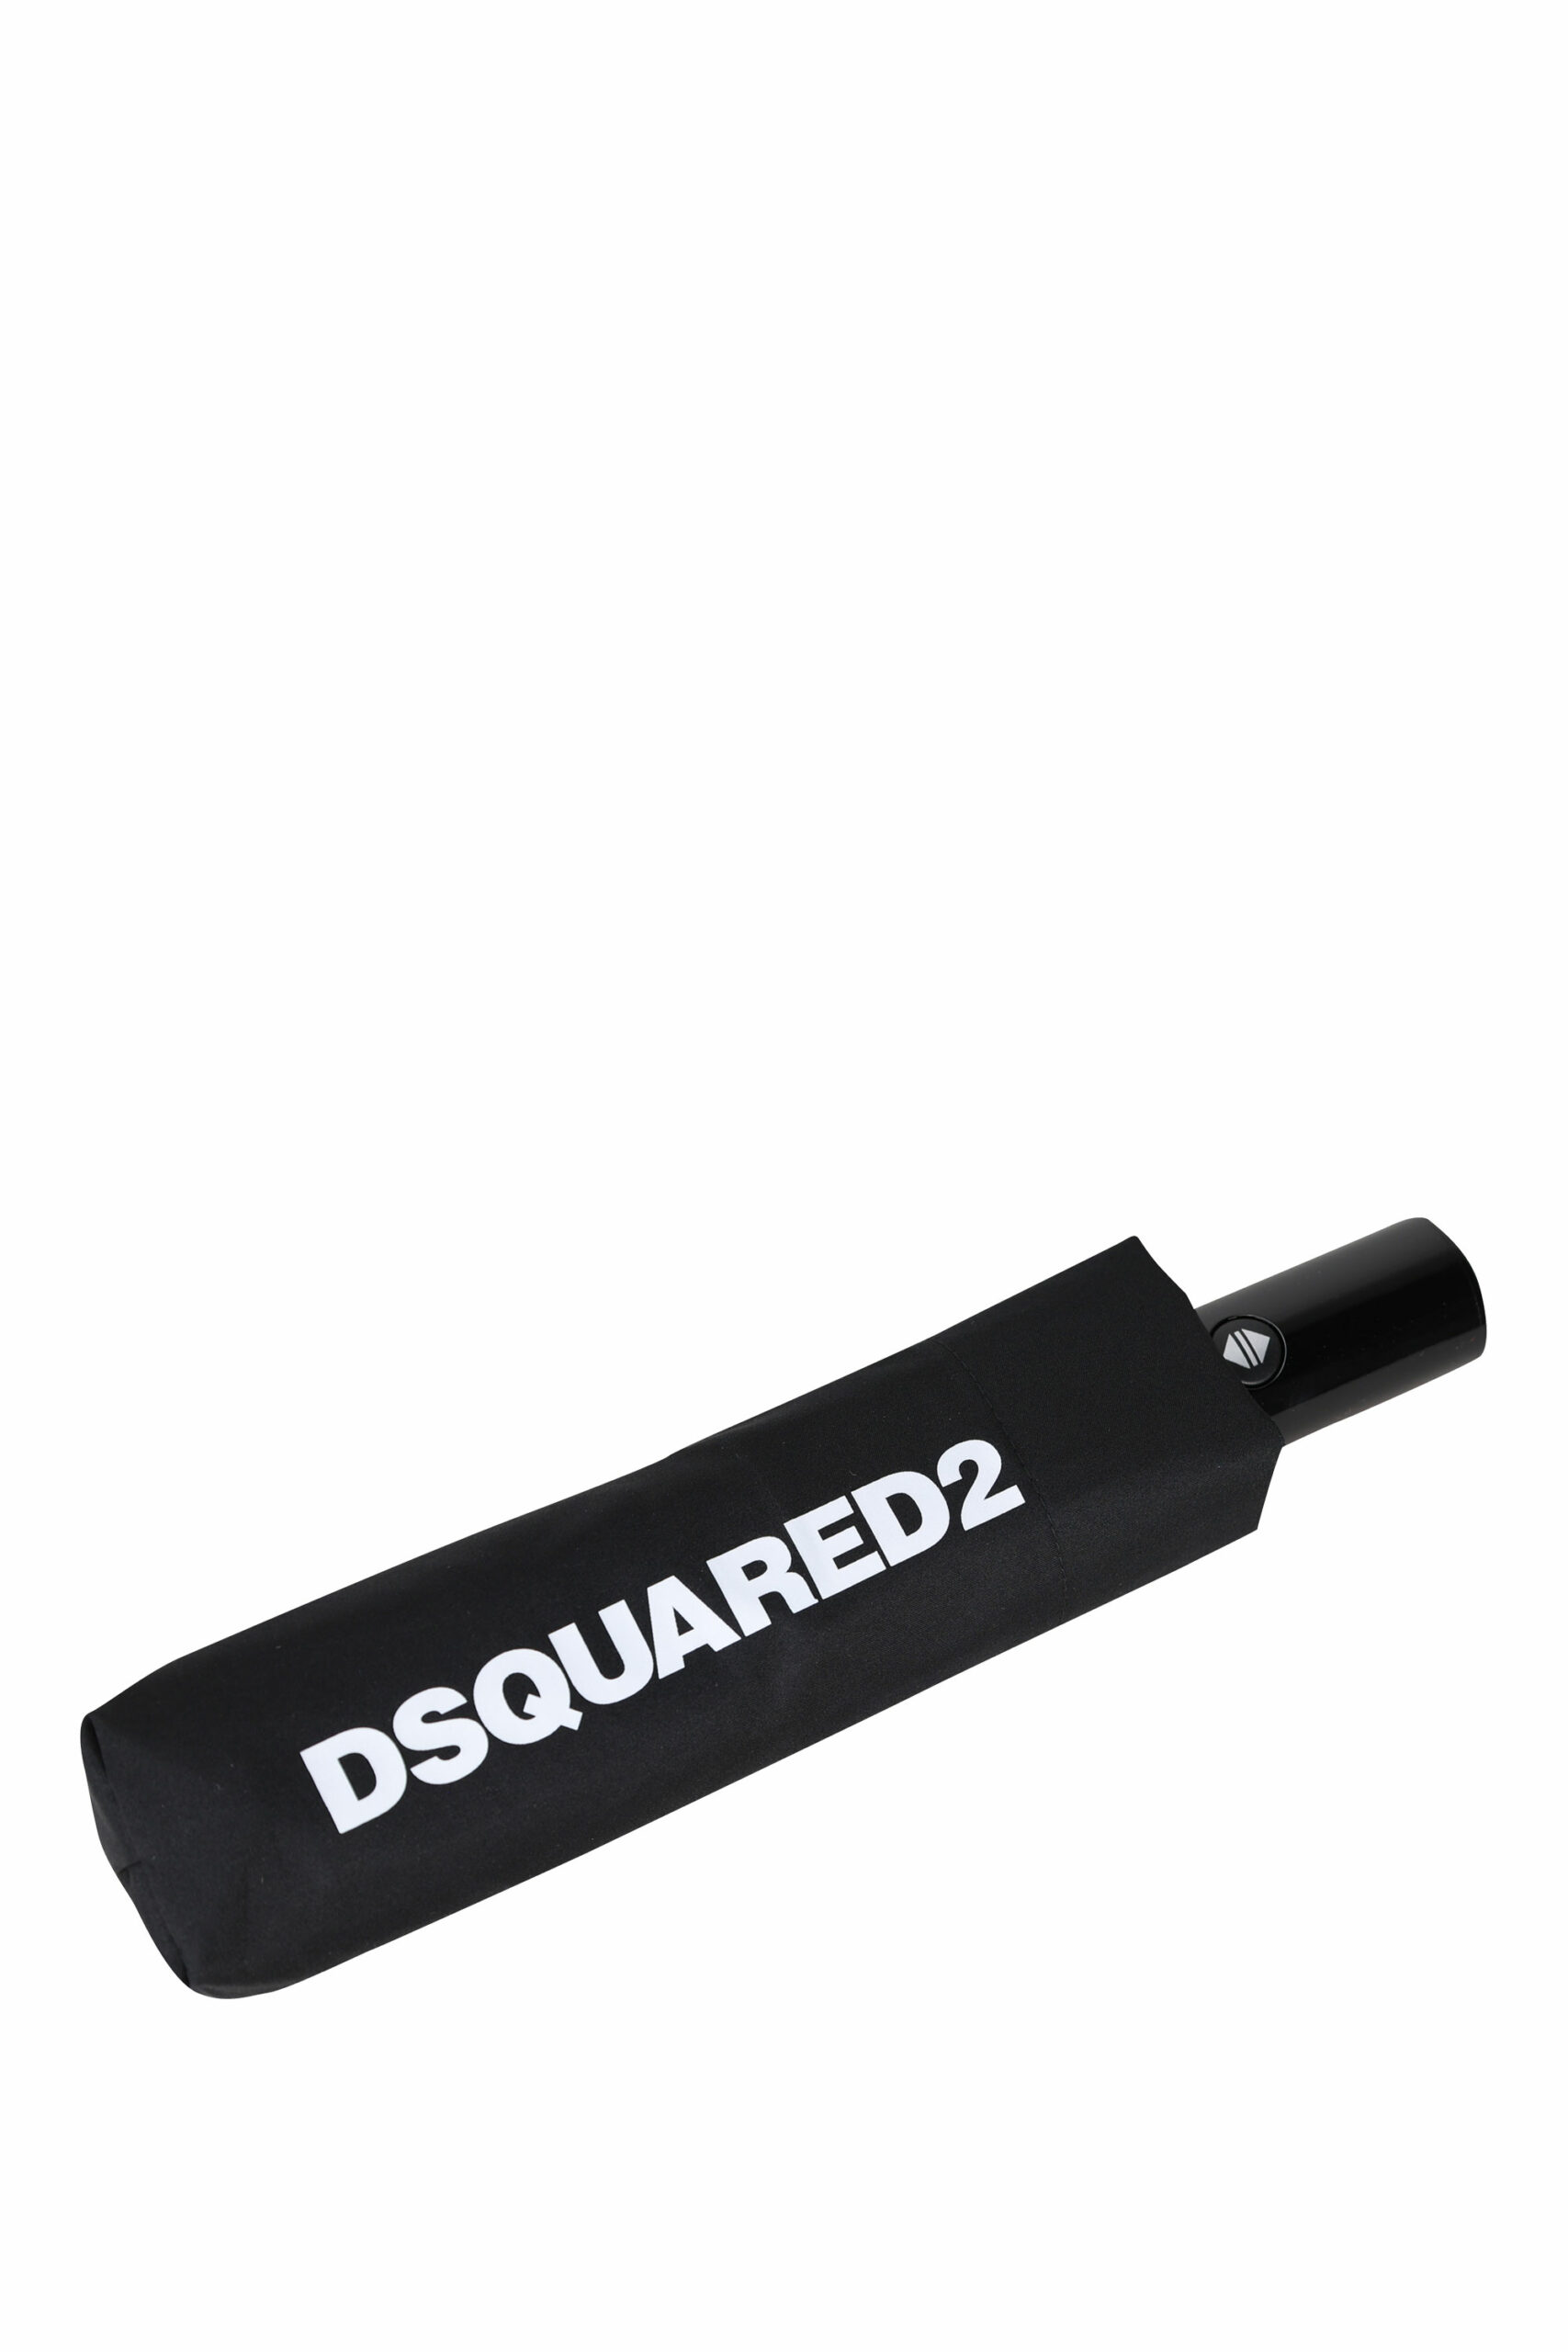 Dsquared2 - Sombrilla negra con maxilogo - BLS Fashion